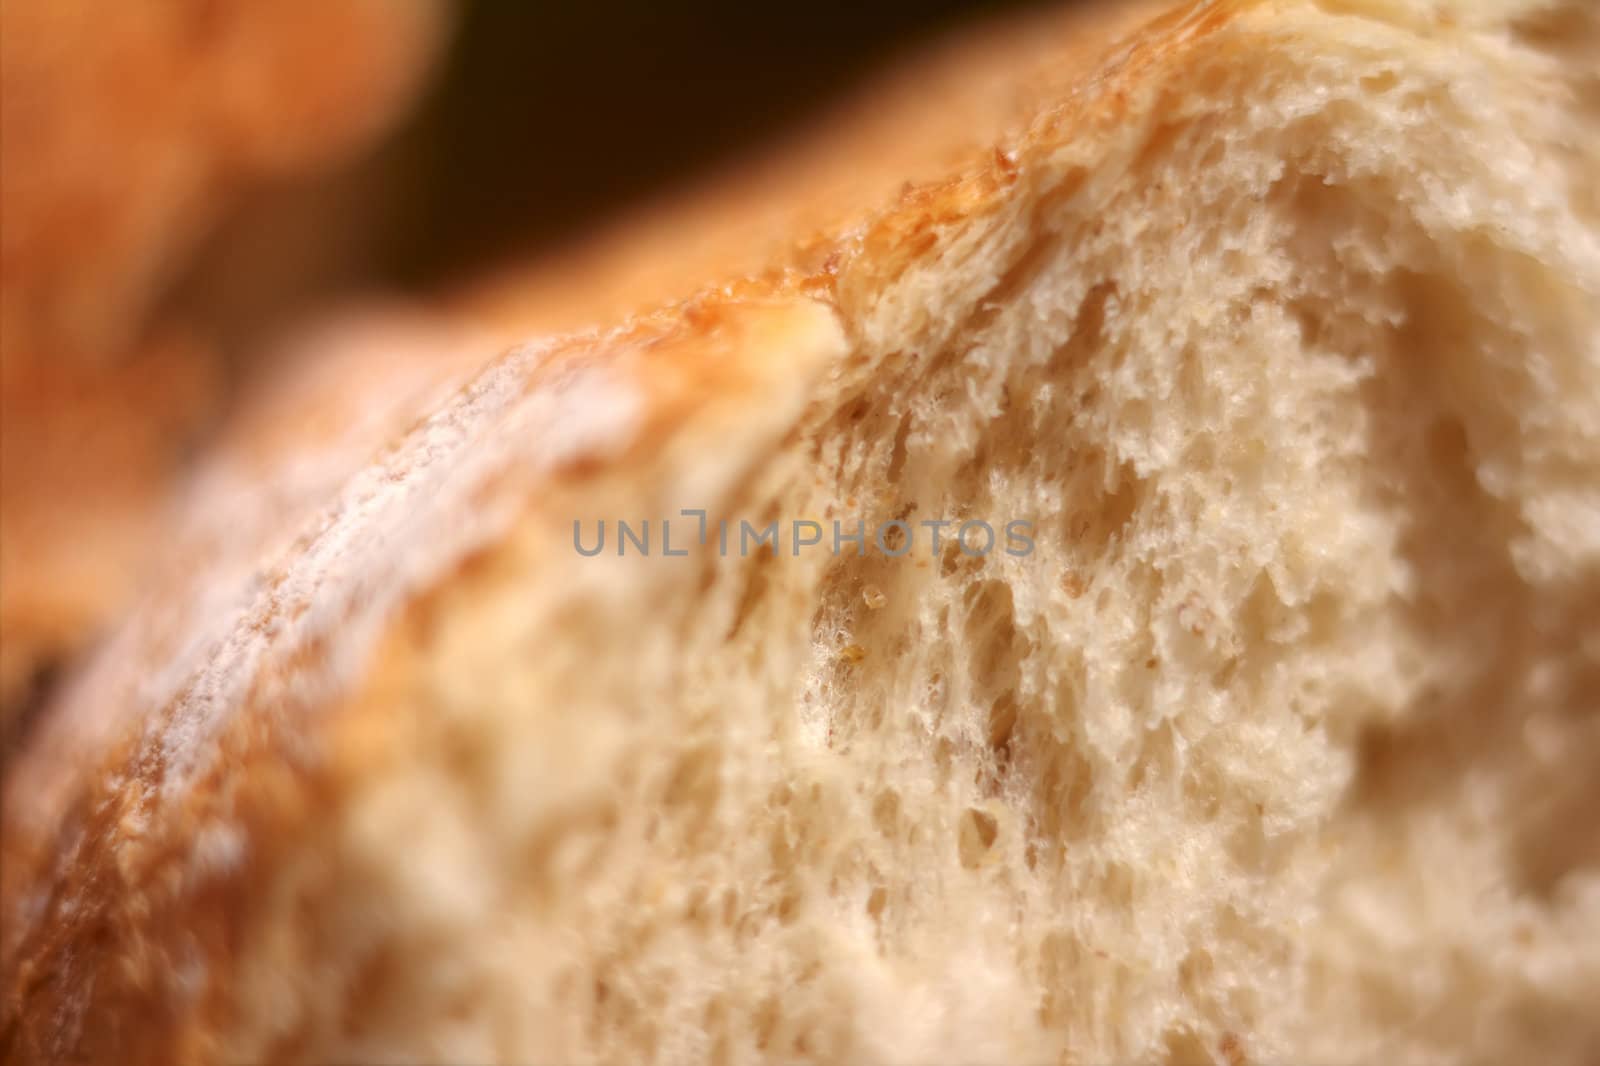 Macro of fresh bread, broken in halves.